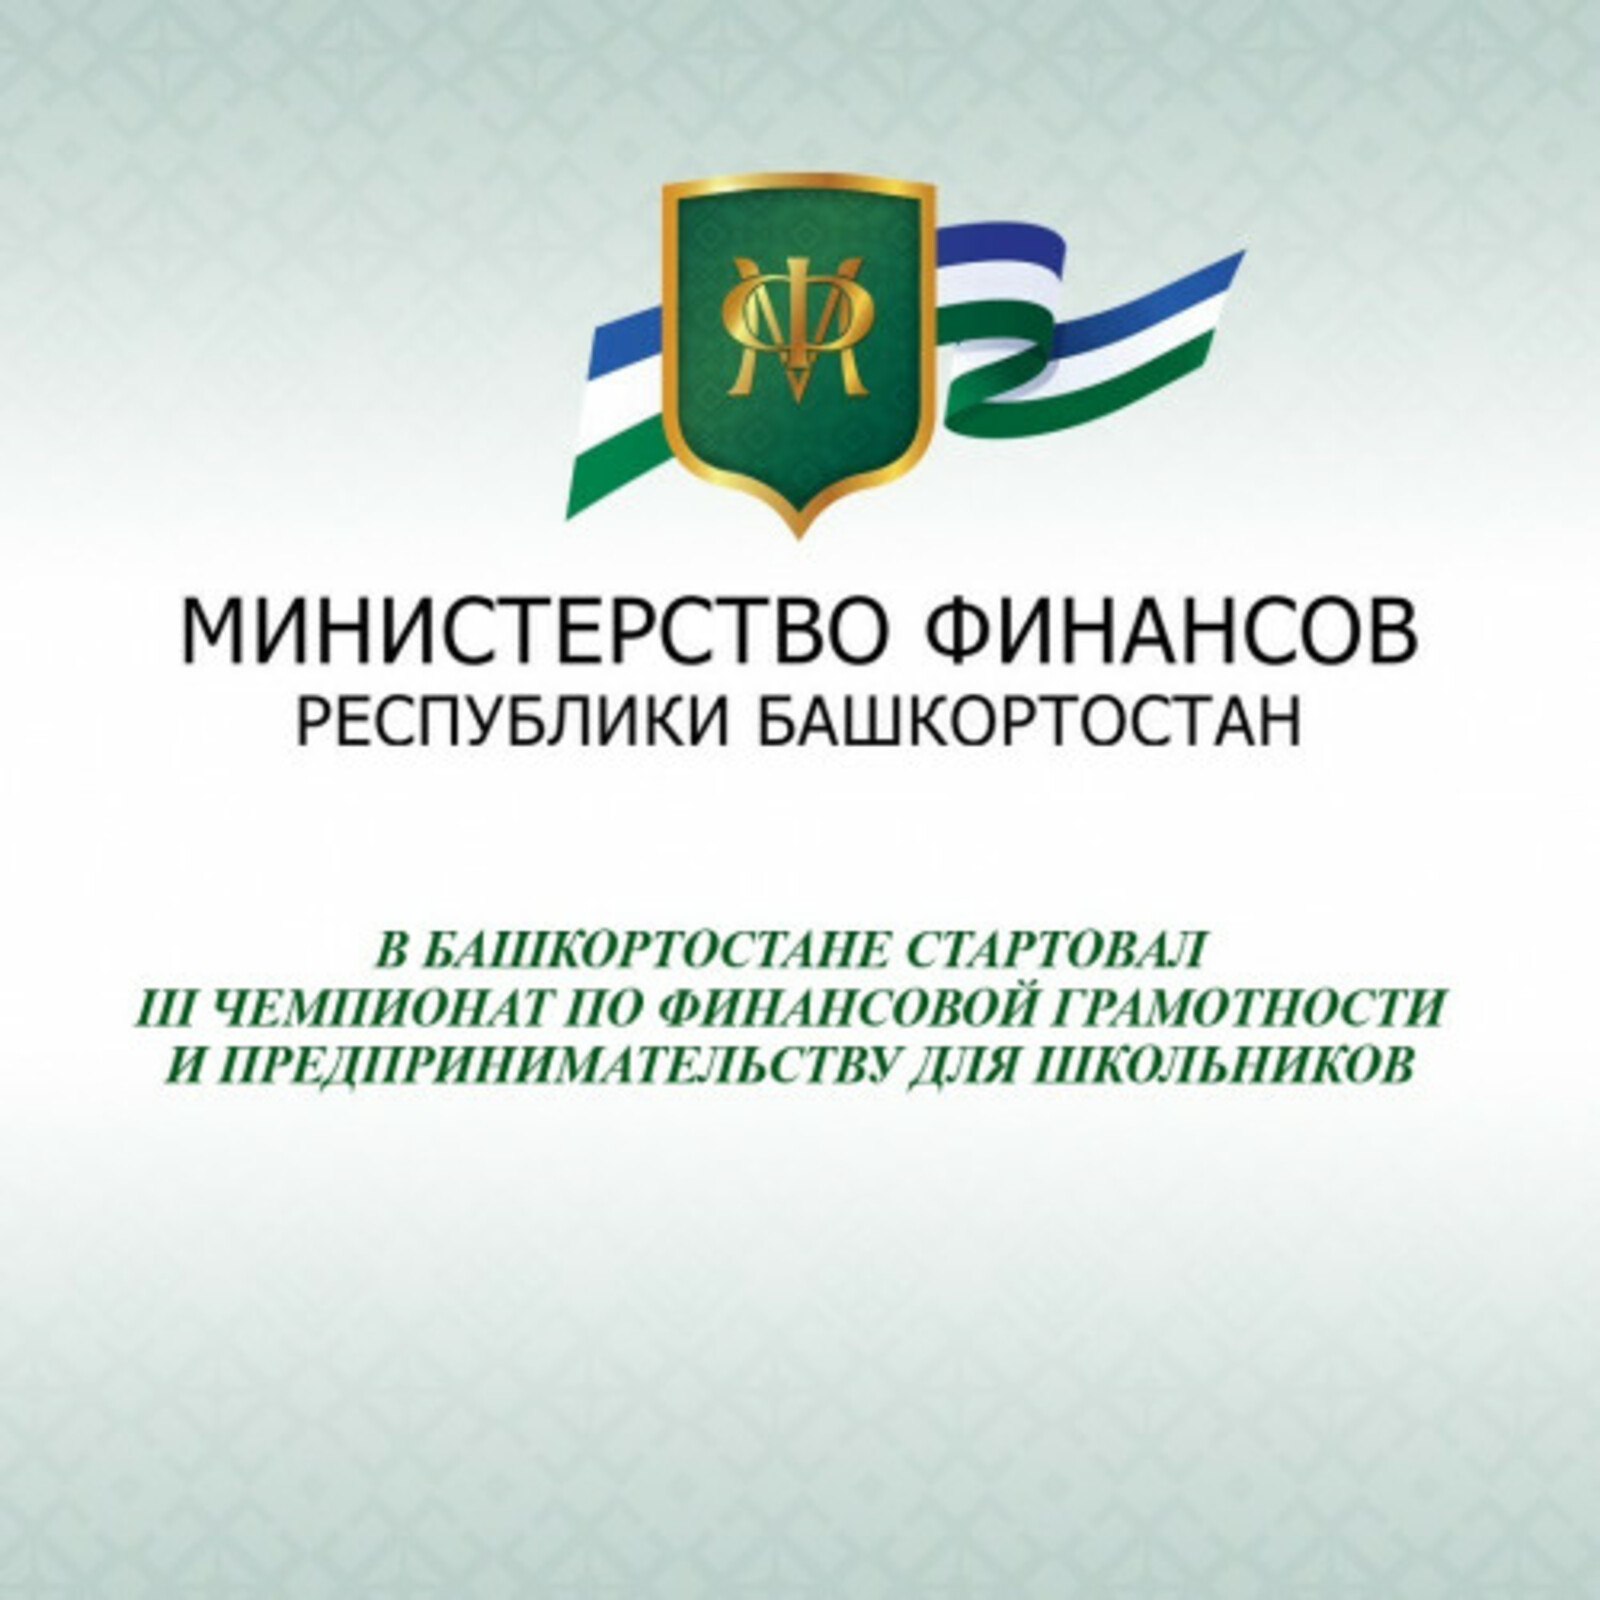 В Башкортостане стартовал III Чемпионат по финансовой грамотности и предпринимательству для школьников